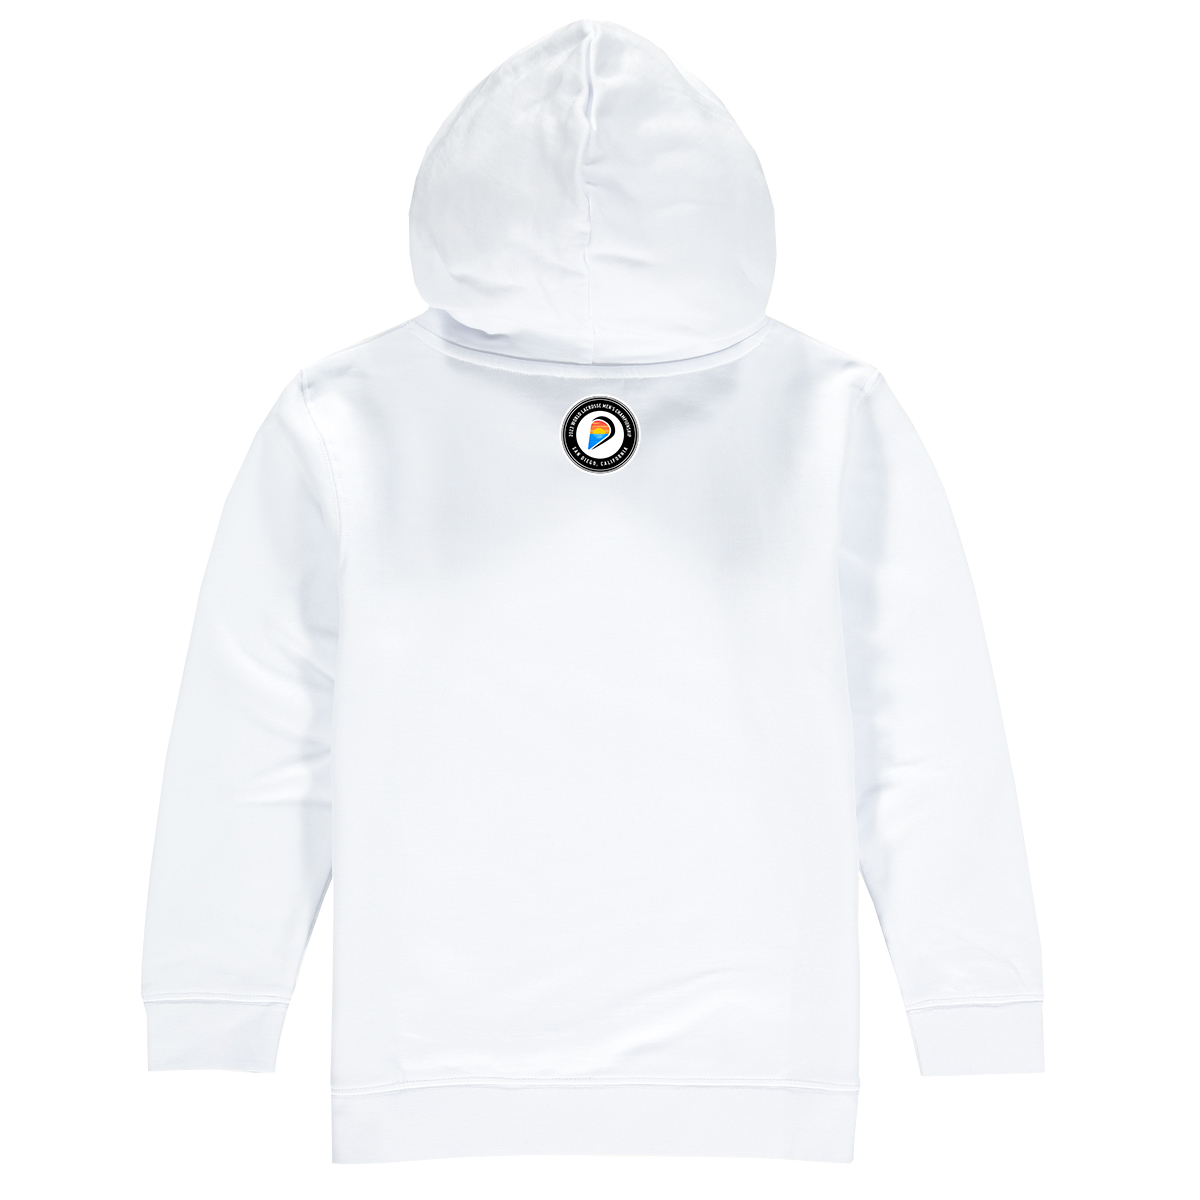 Korea Premium Unisex Hoodie Sweatshirt White